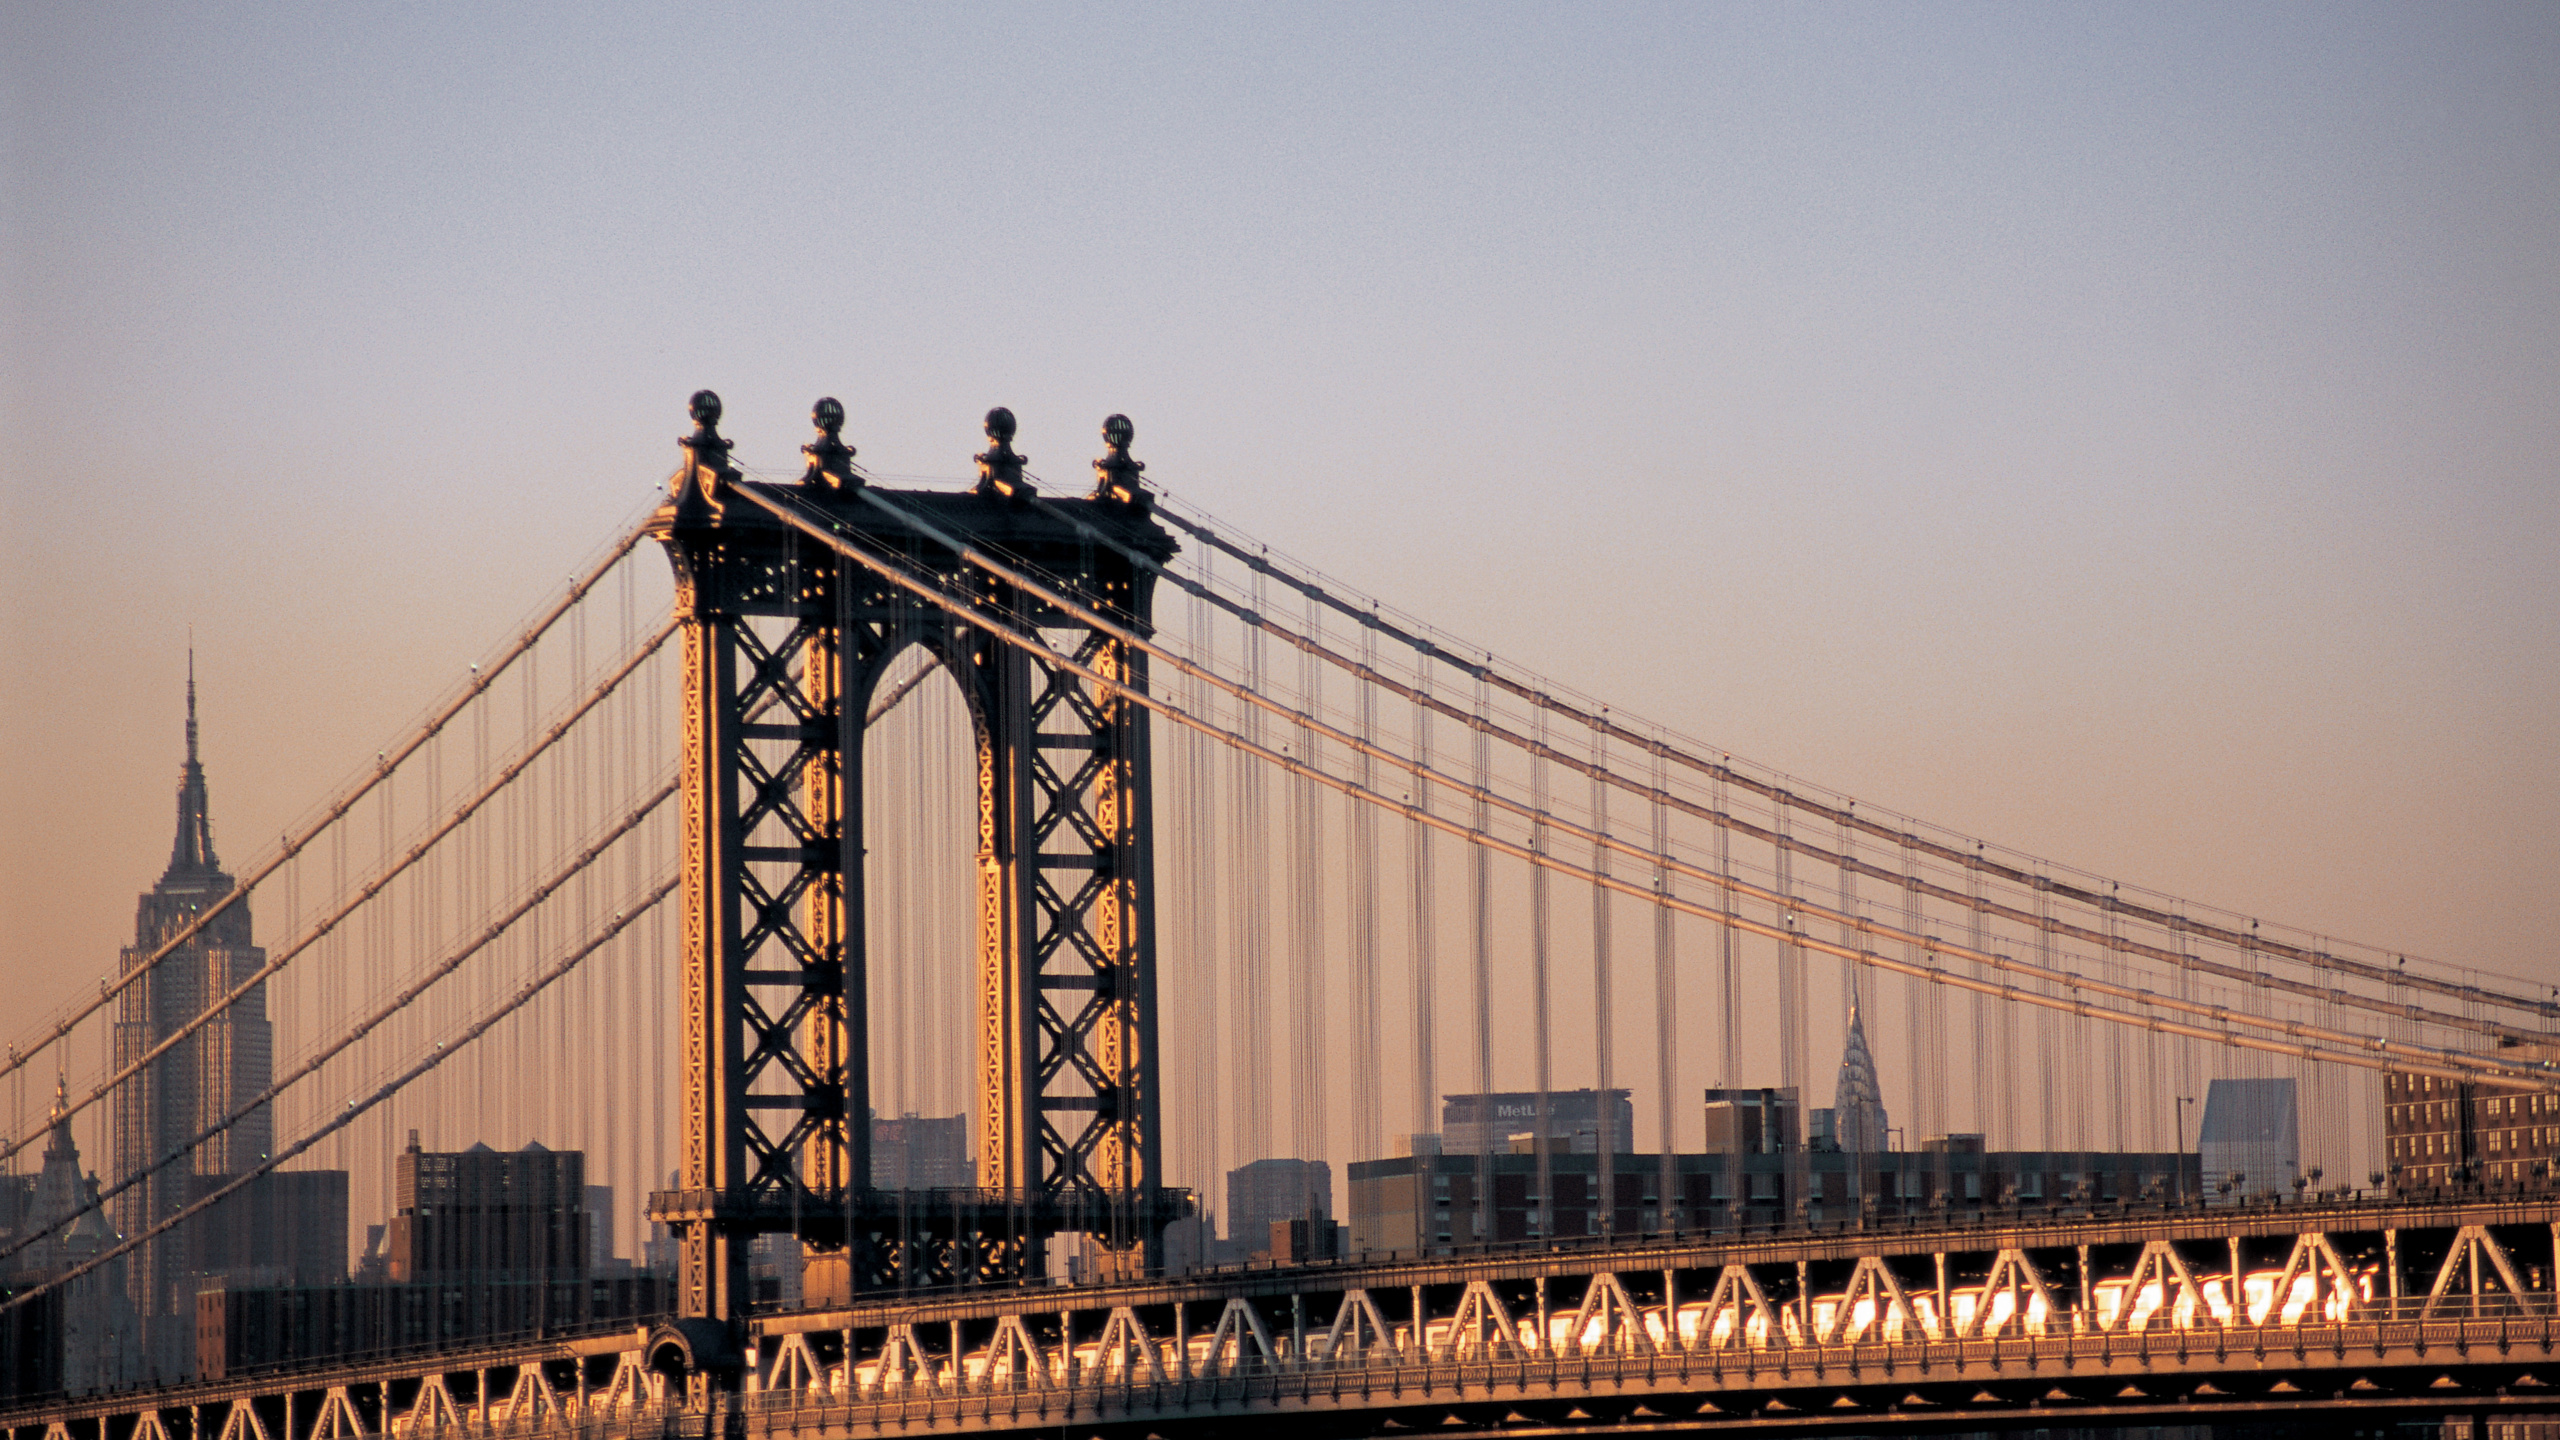 布鲁克林大桥, 曼哈顿大桥, 有线桥, 里程碑, 城市 壁纸 2560x1440 允许